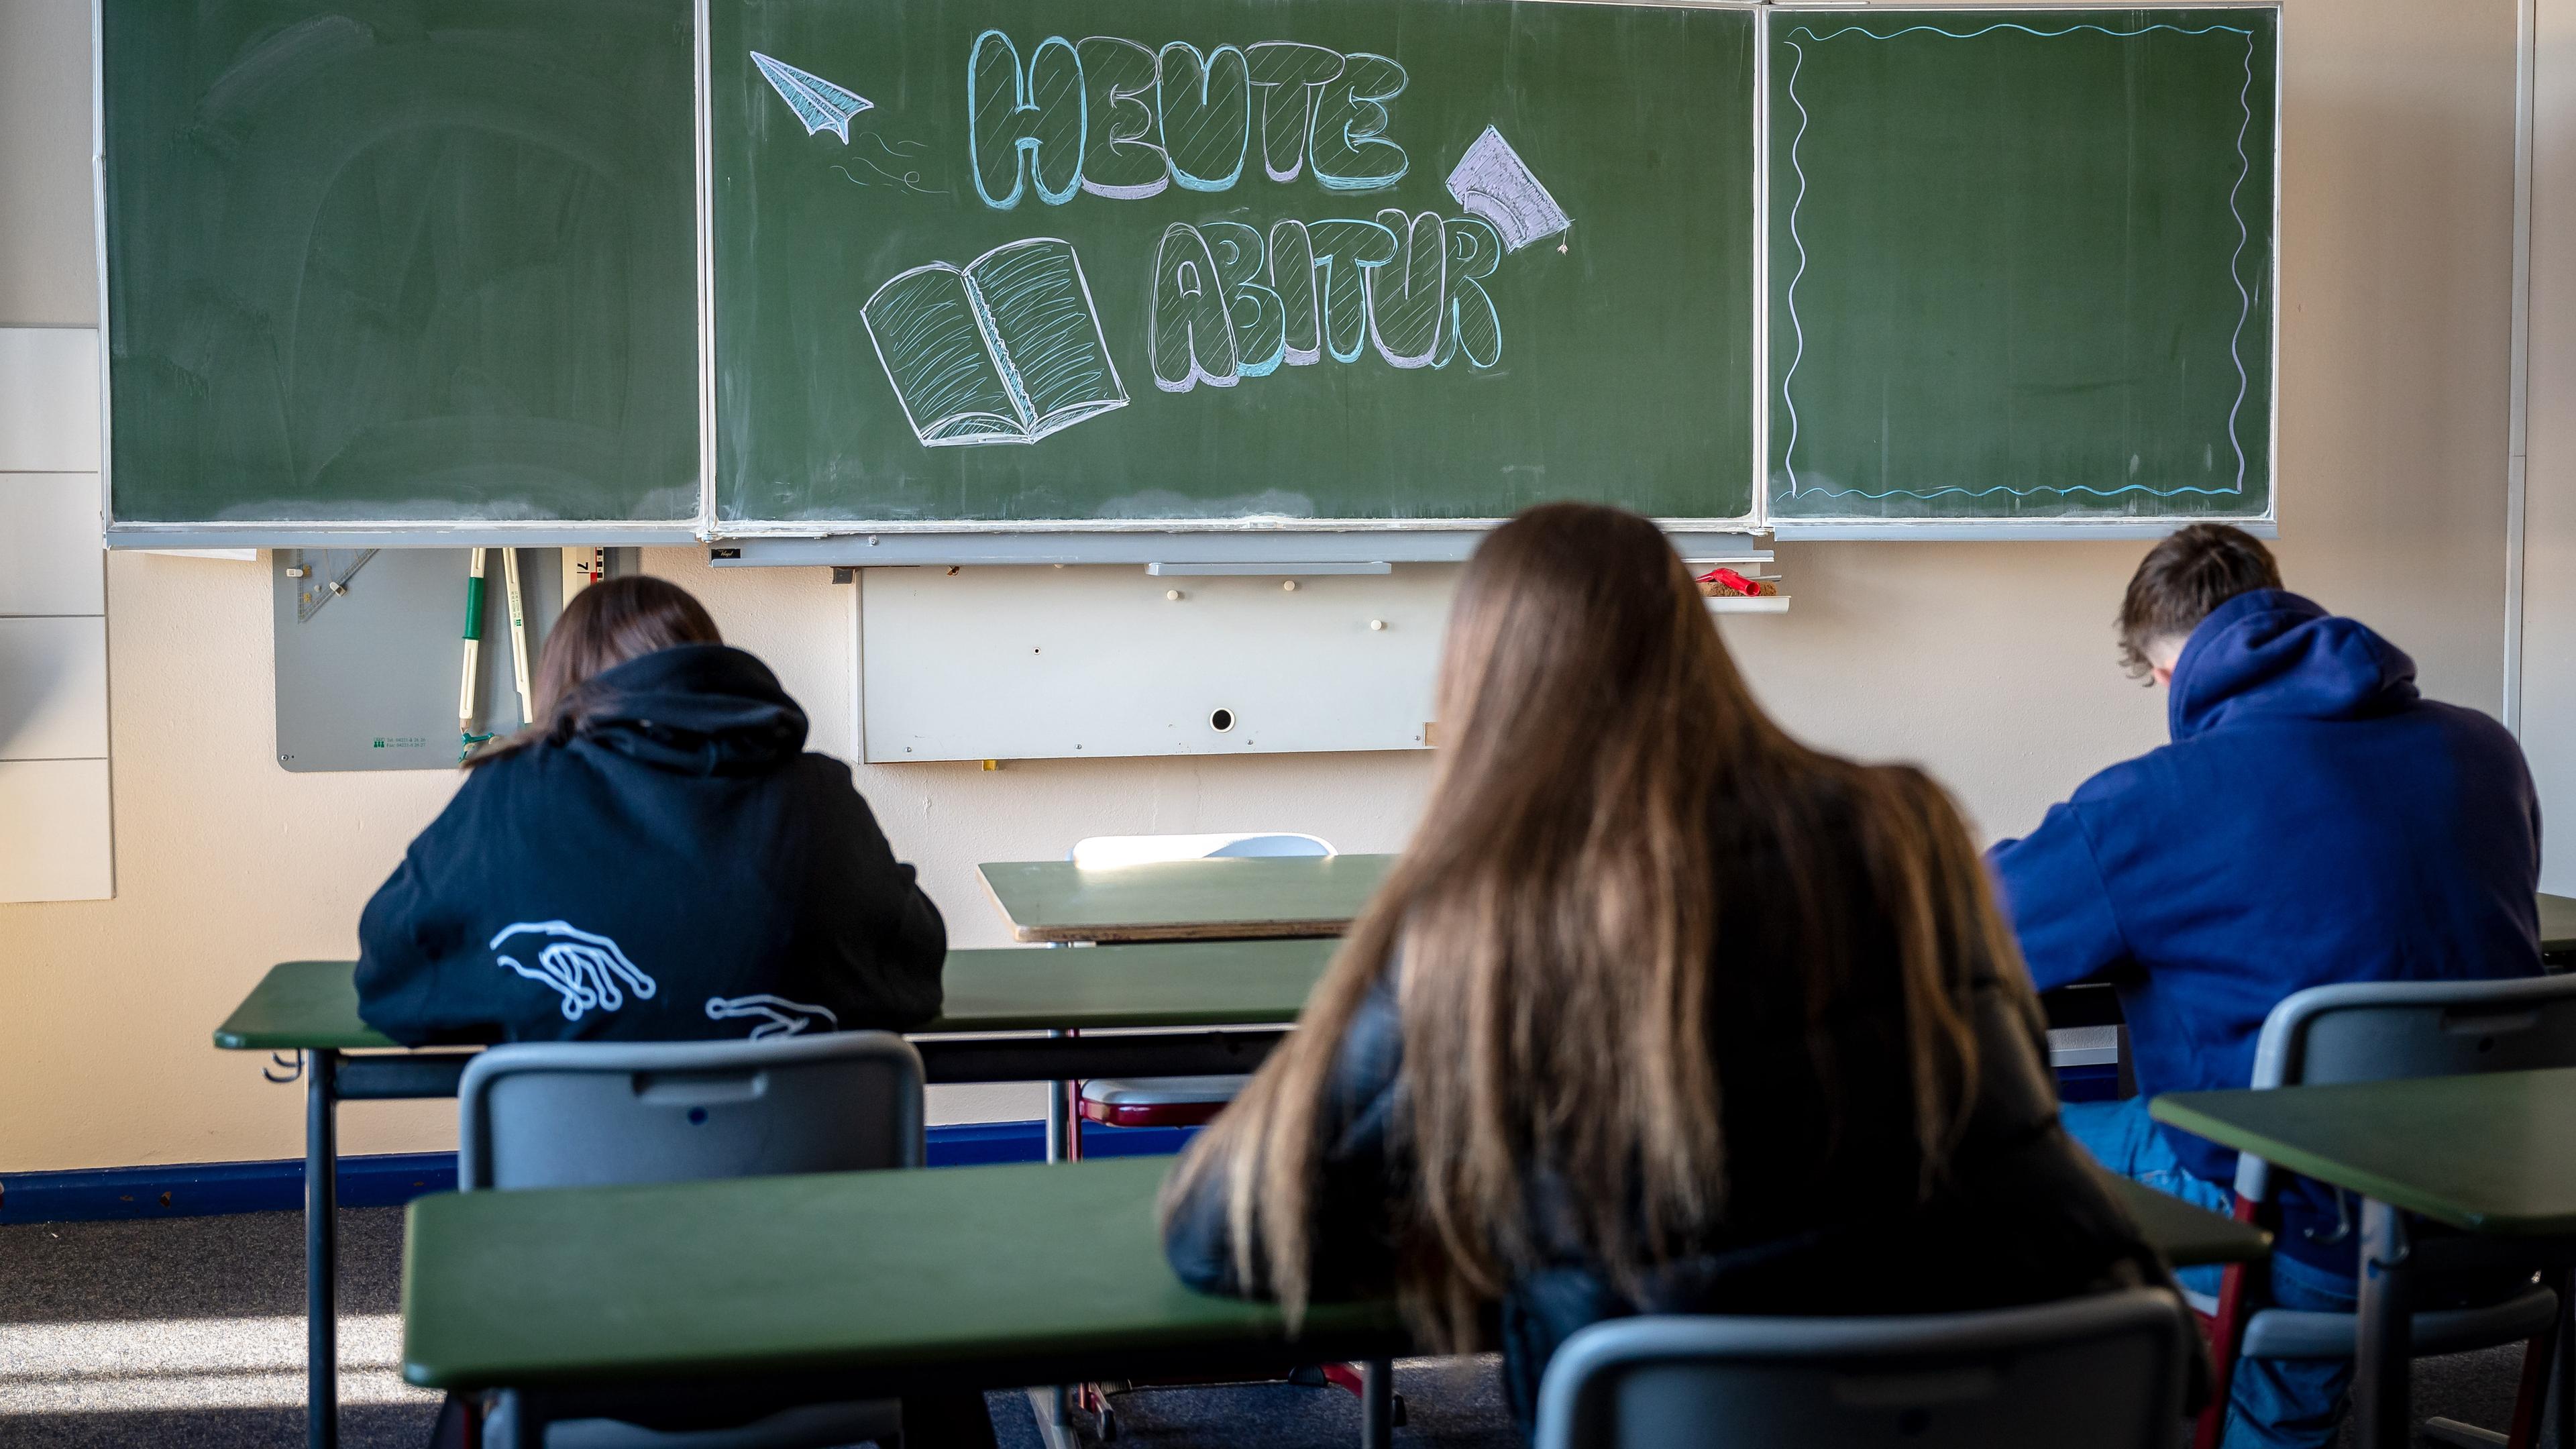 Ein Klassenzimmer. Drei Schüler und Schülerinnen sitzen an den Schultischen. An der Tafel steht: "Heute Abitur".